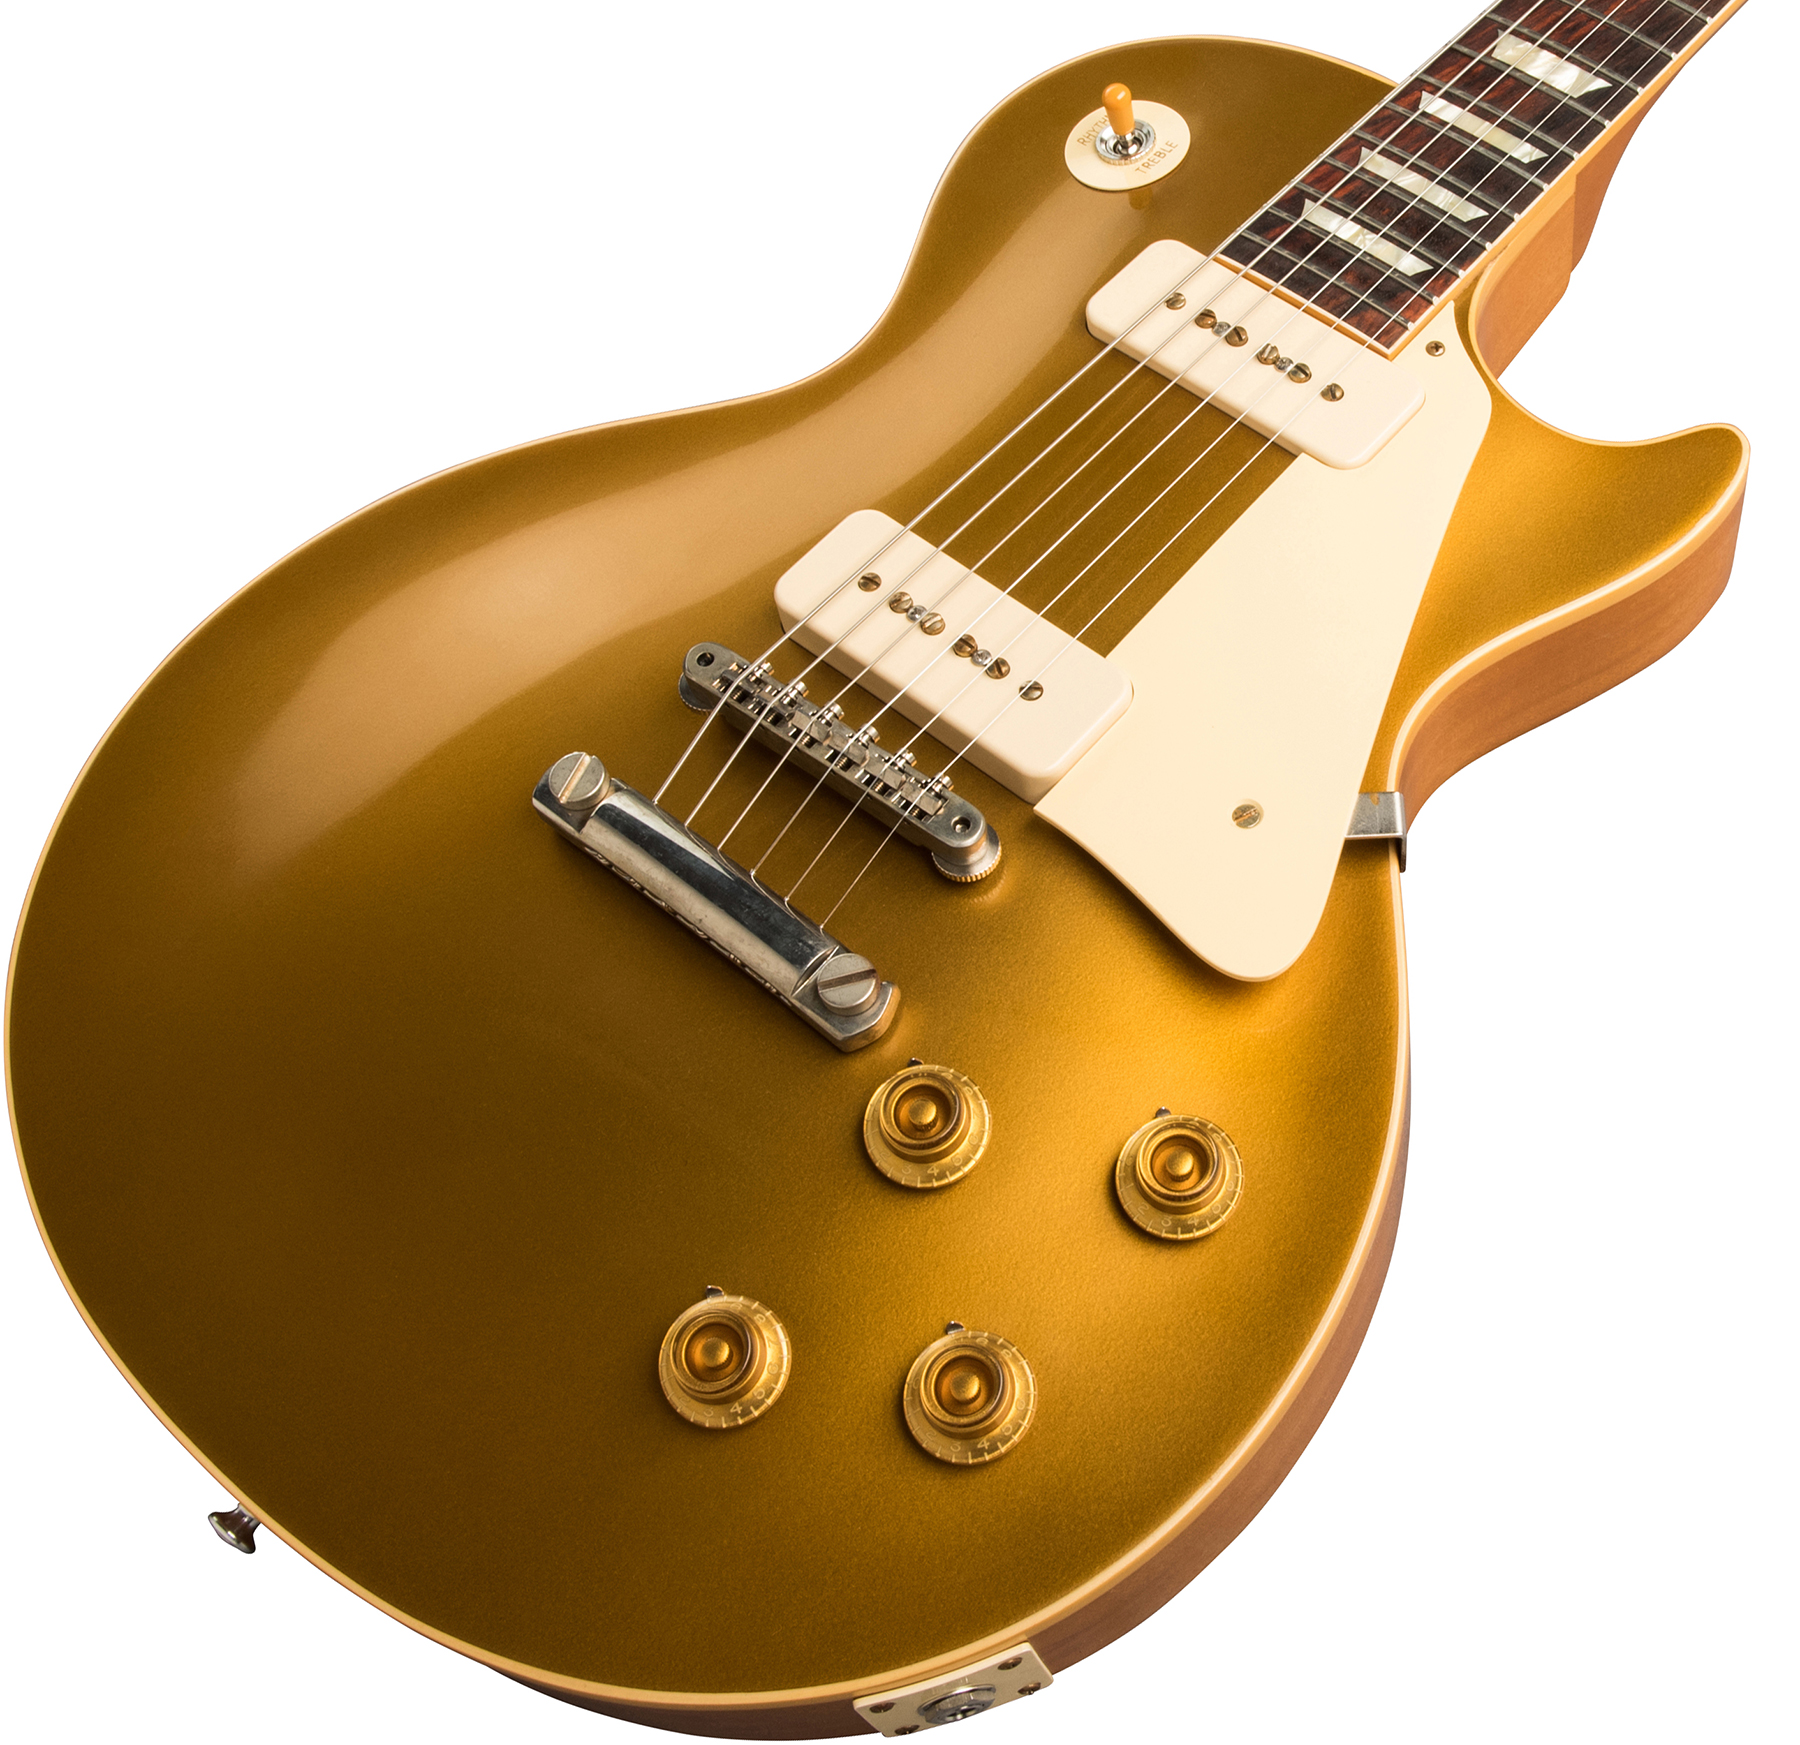 Gibson Custom Shop Les Paul Goldtop 1956 Reissue 2019 2p90 Ht Rw - Vos Double Gold - Guitarra eléctrica de corte único. - Variation 3